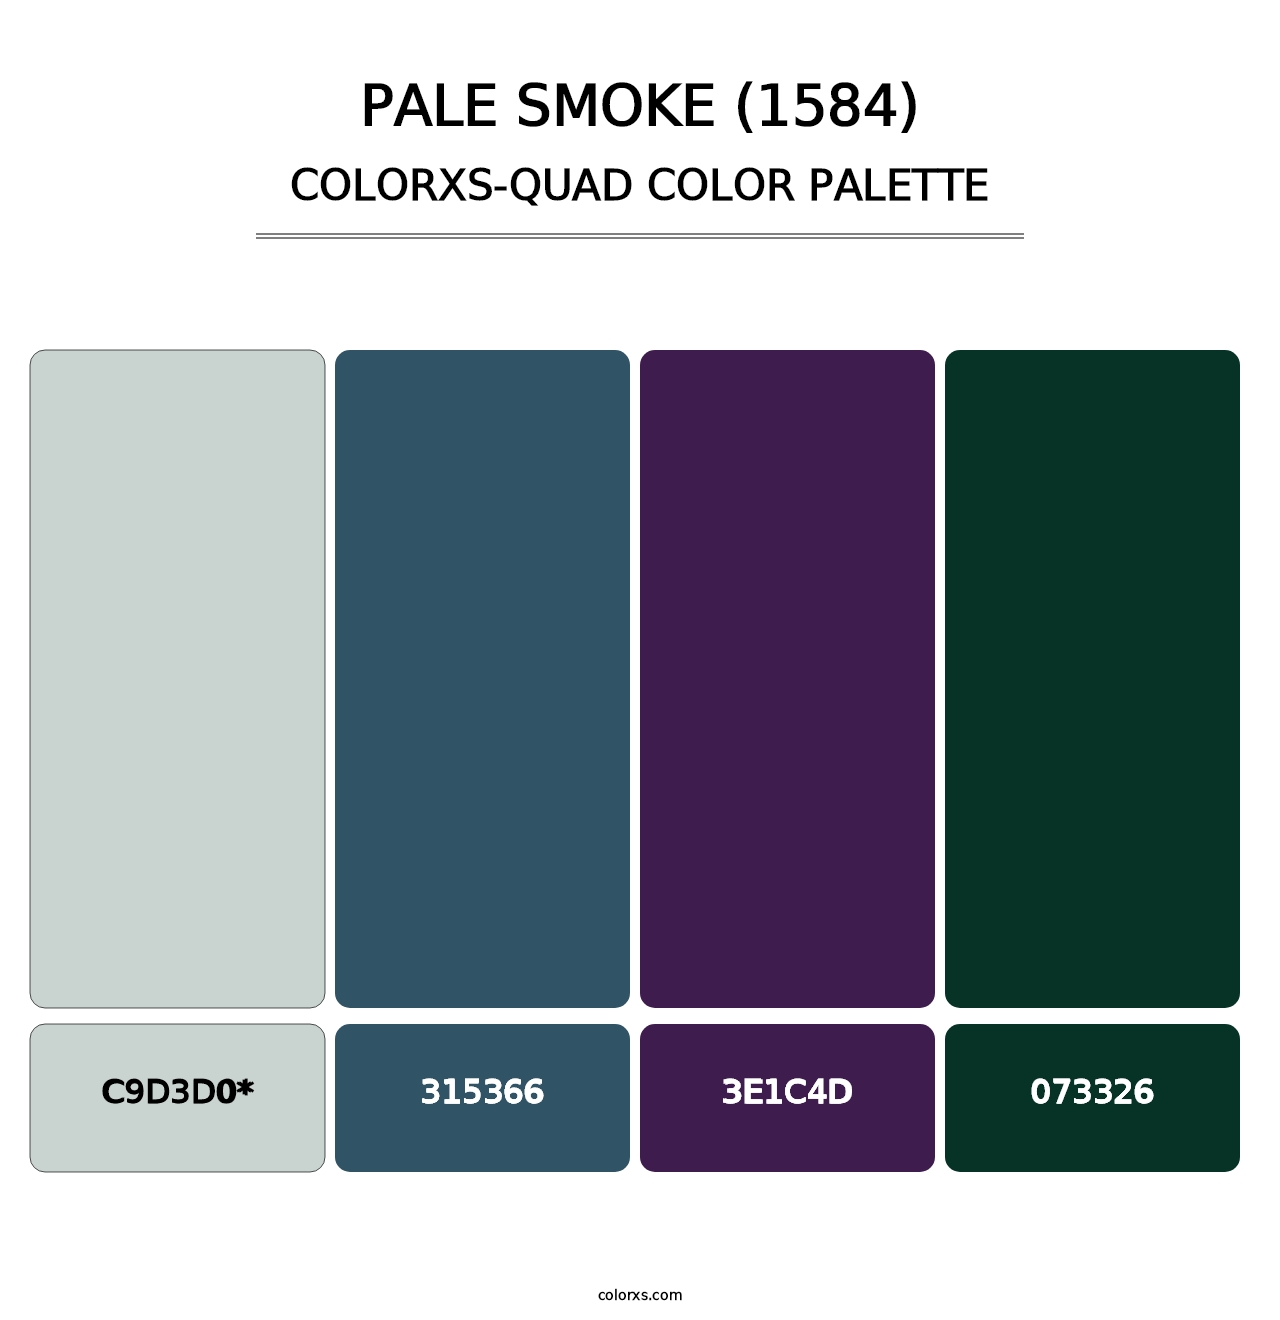 Pale Smoke (1584) - Colorxs Quad Palette